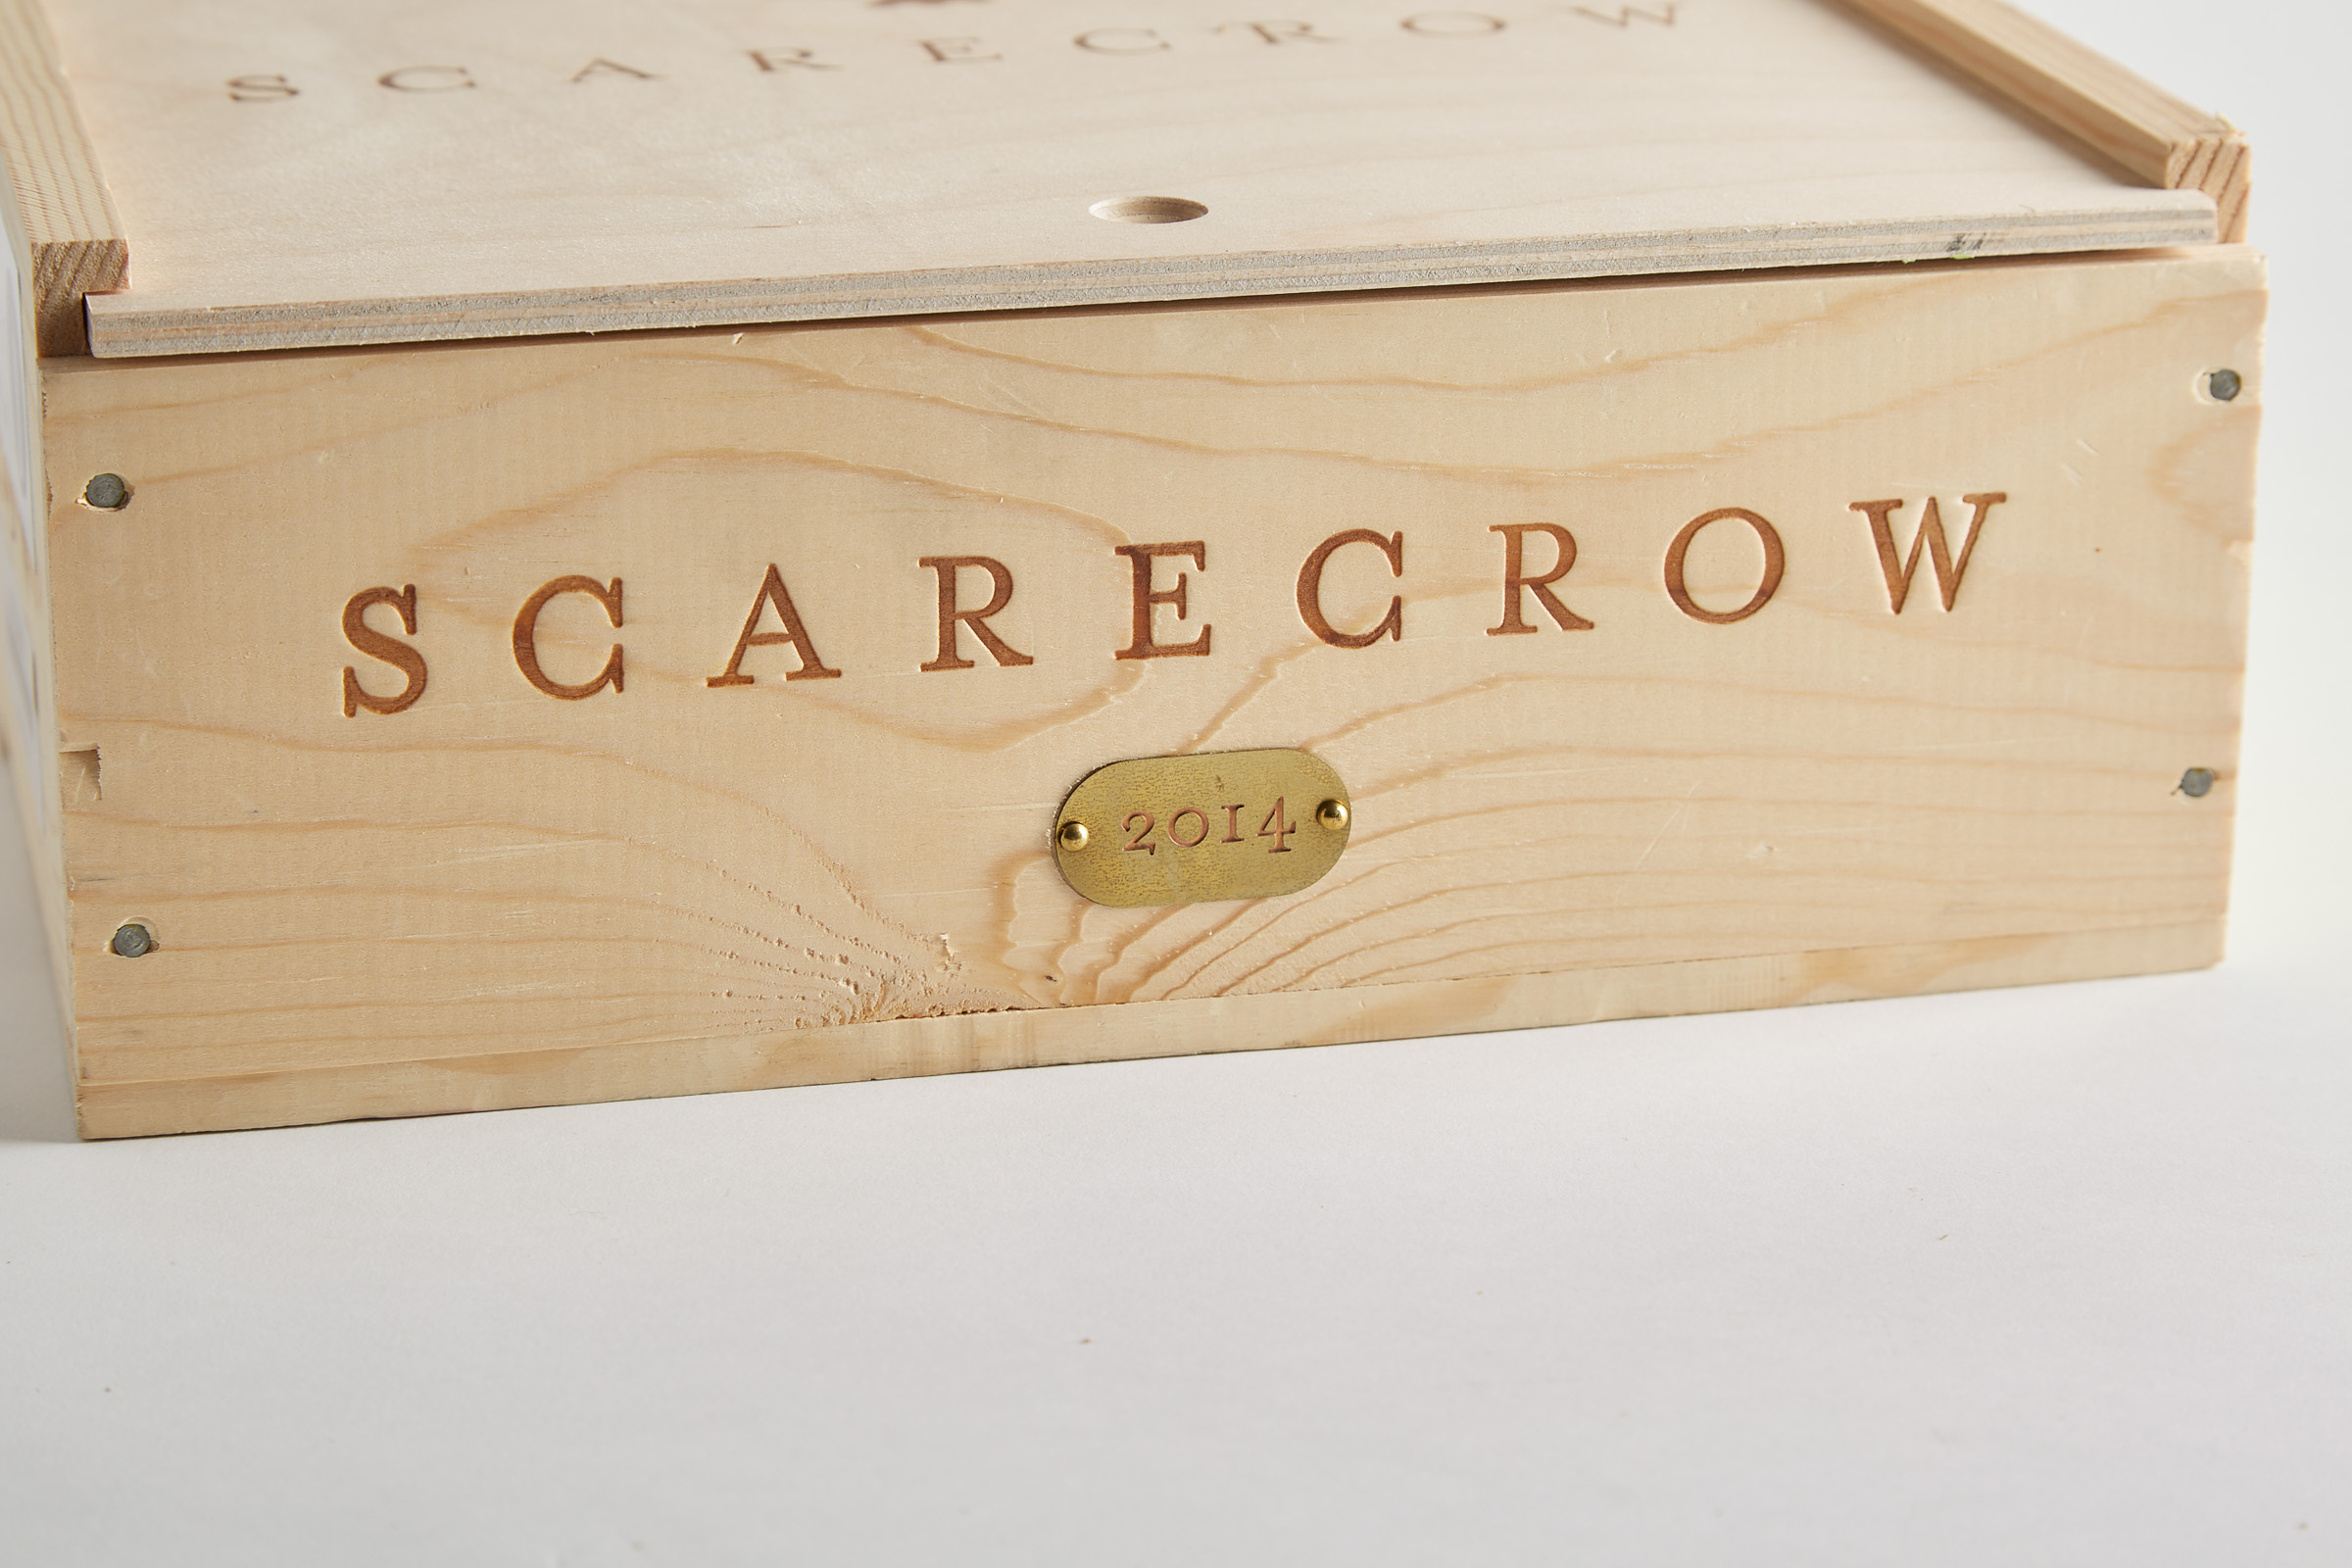 SCARECROW CABERNET SAUVIGNON 2014 (3, OWC) WA 100